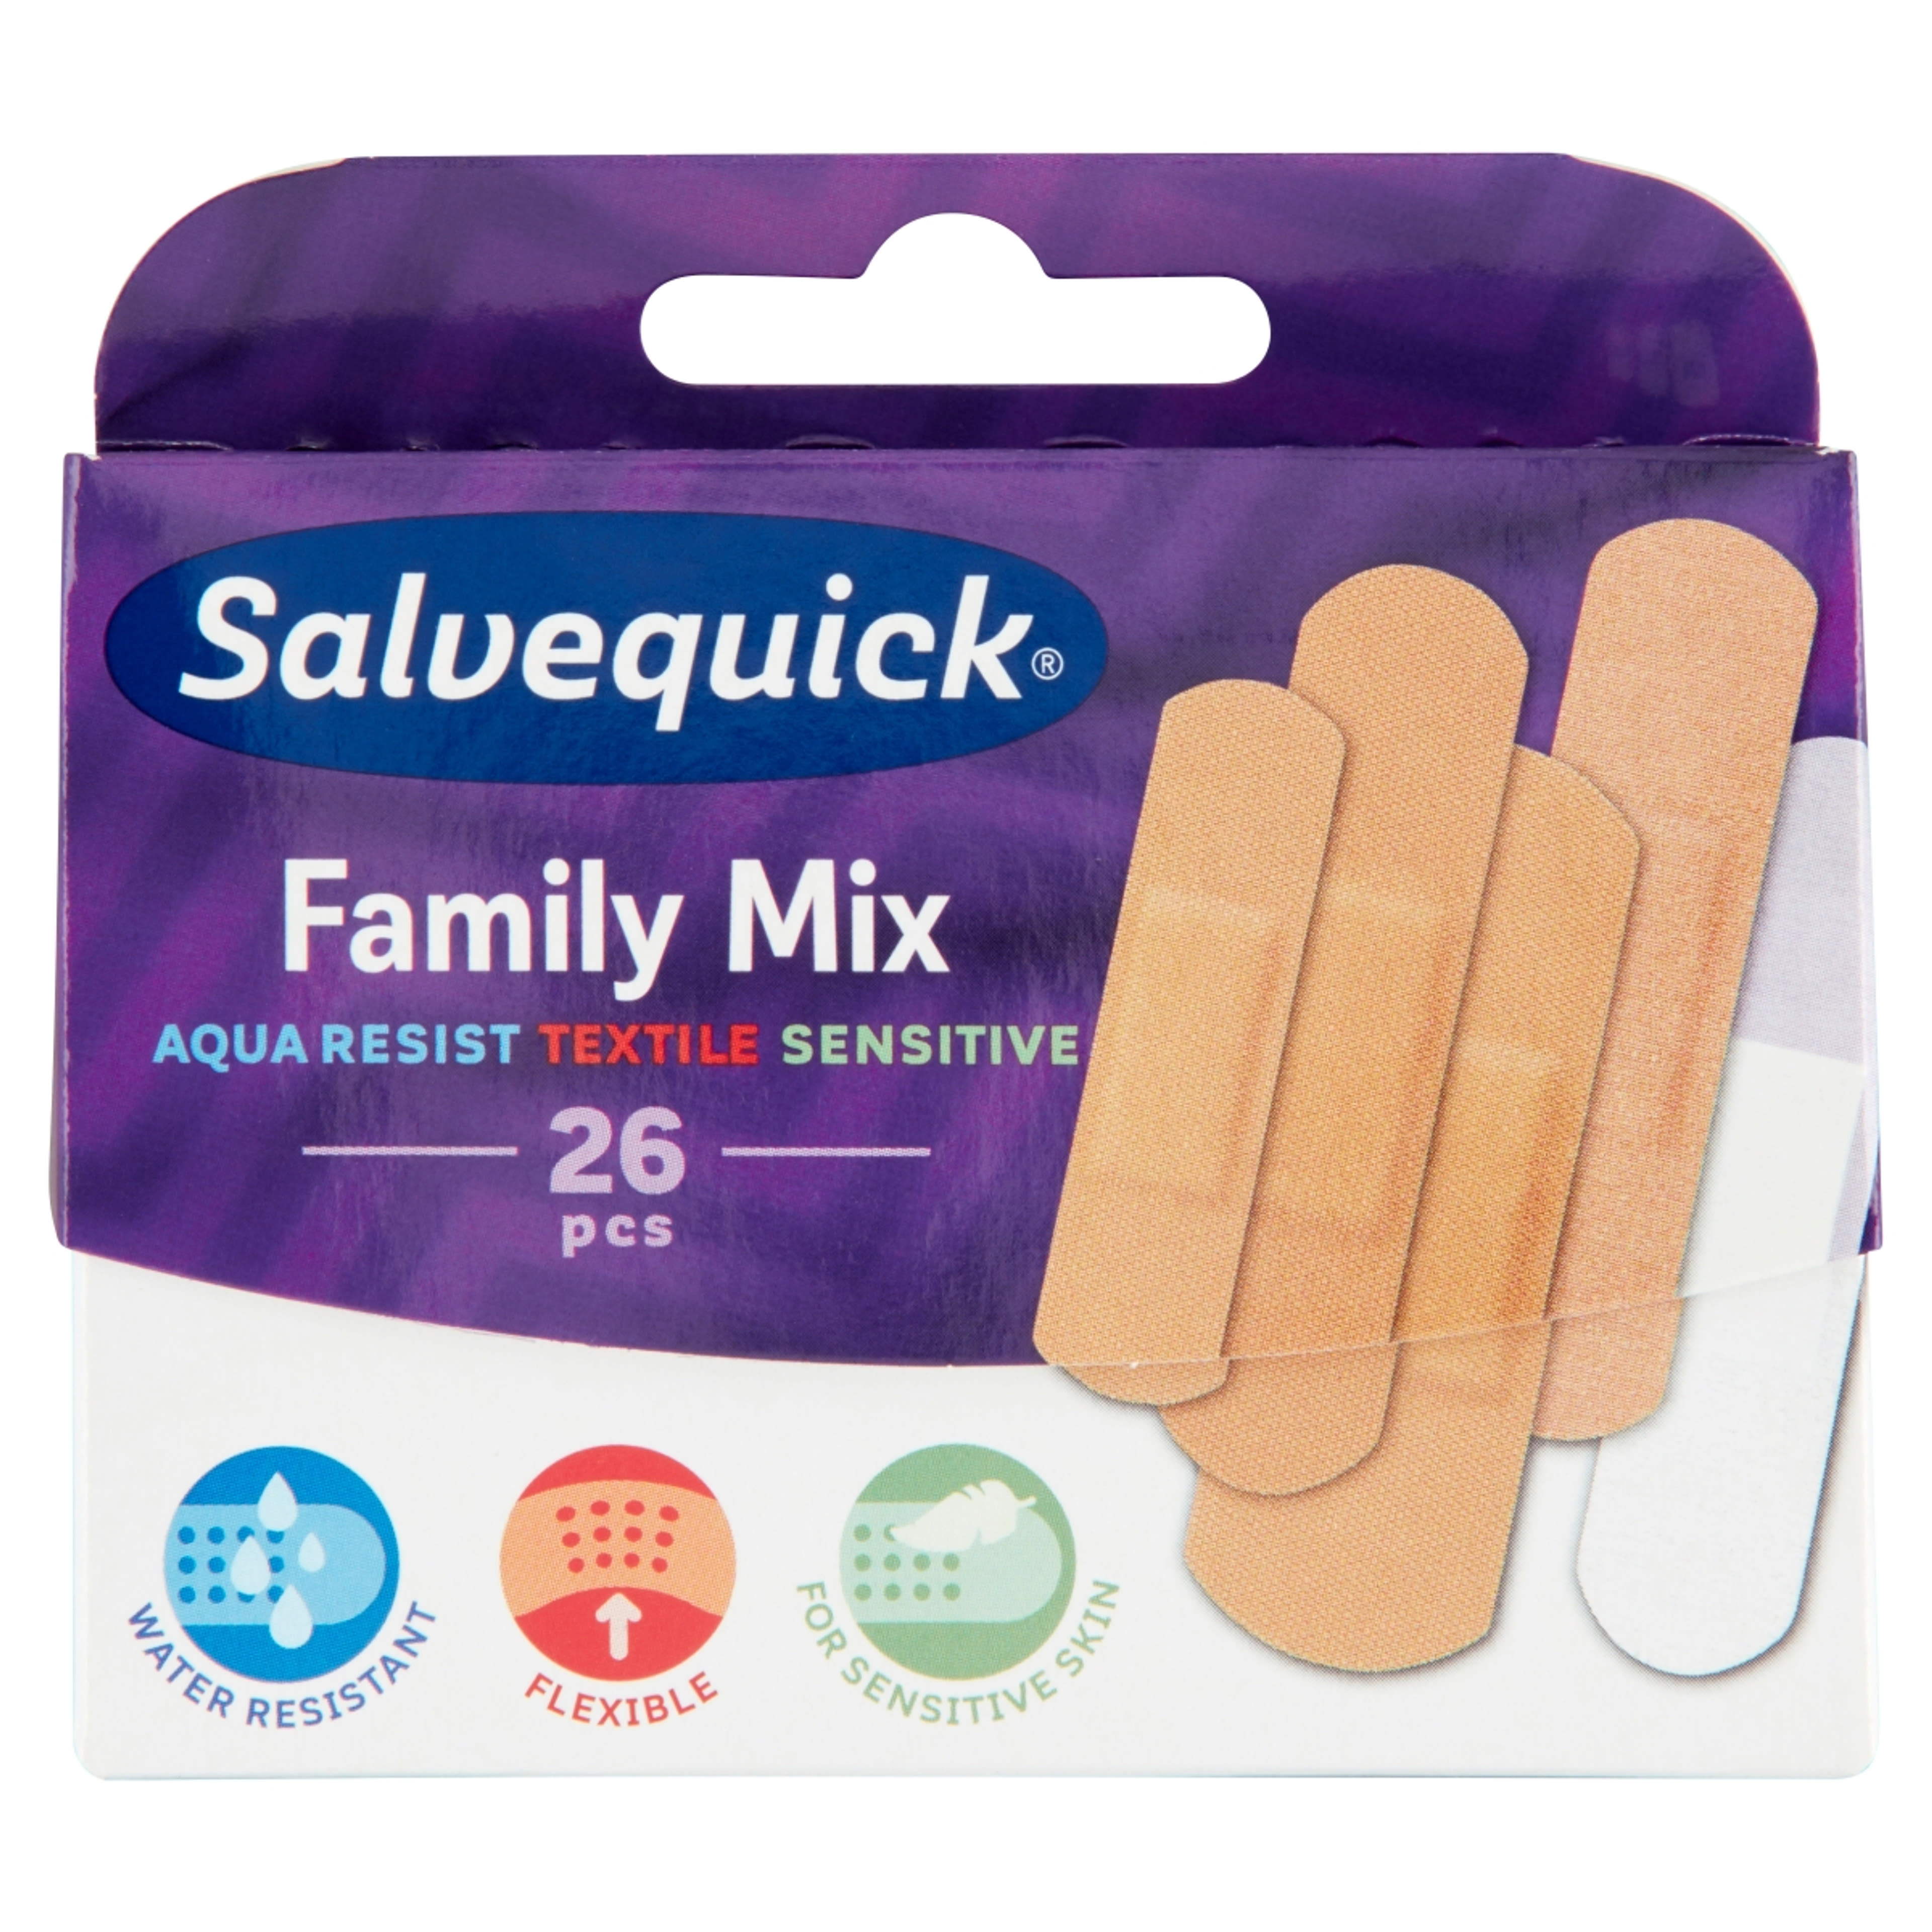 Salvequick Családi Mix hypoallergén sebtapasz csomag - 26 db